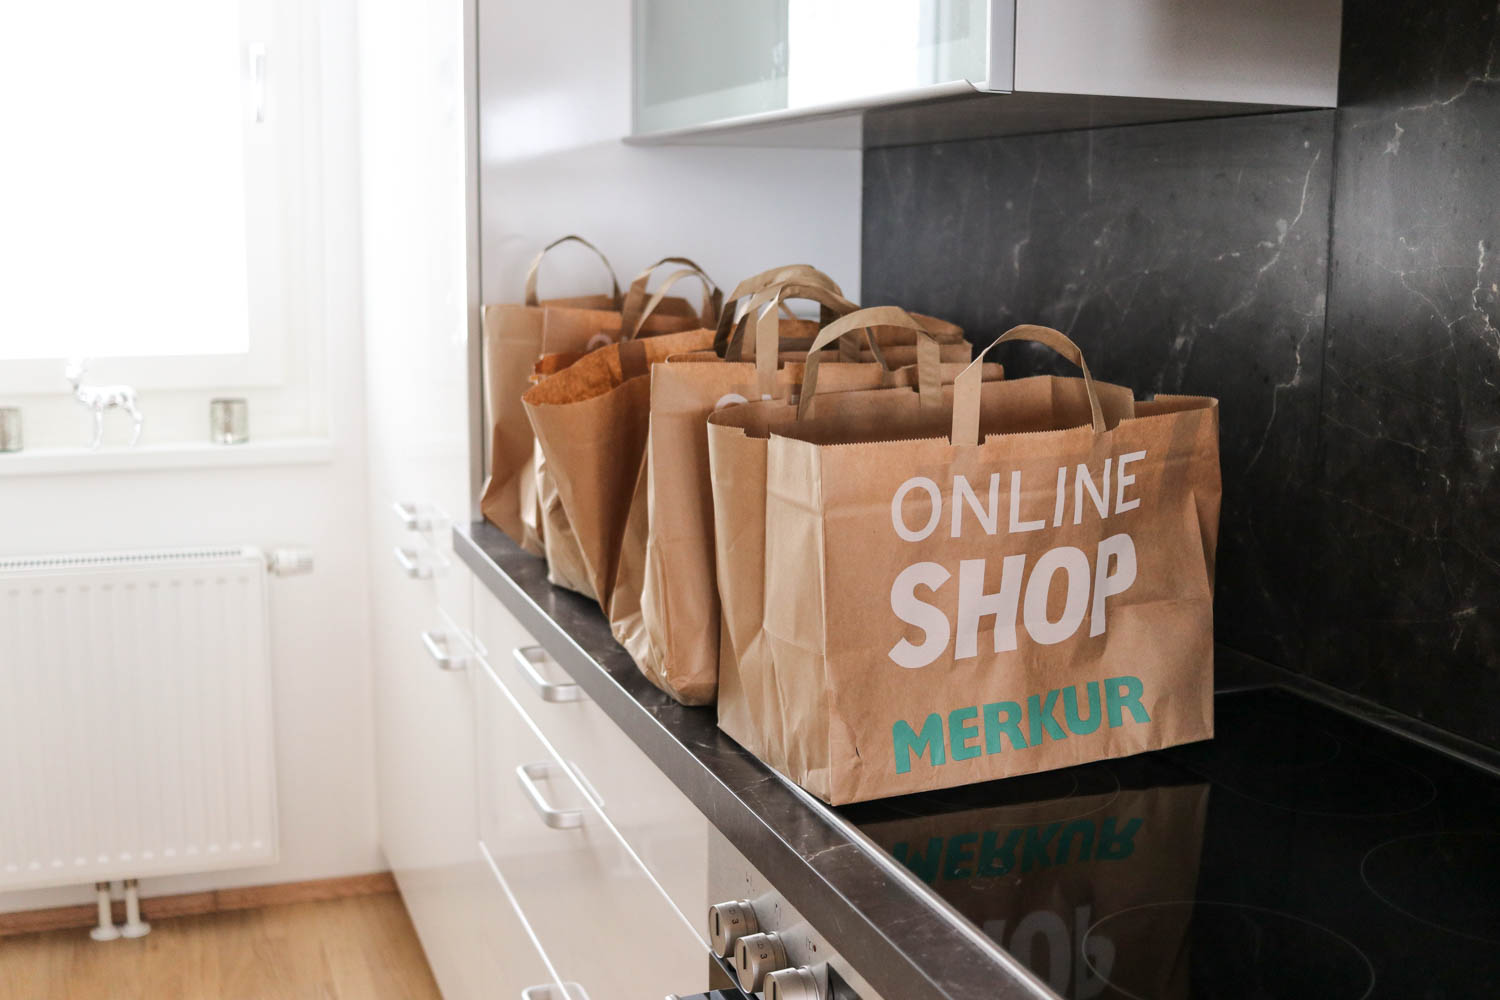 Meine Einkaufsgewohnheiten mit Merkur Online Shop auf dem Lifestyle Blog Bits and Bobs by Eva. Mehr über Essen & Lebensmittel auf www.bitsandbobsbyeva.com